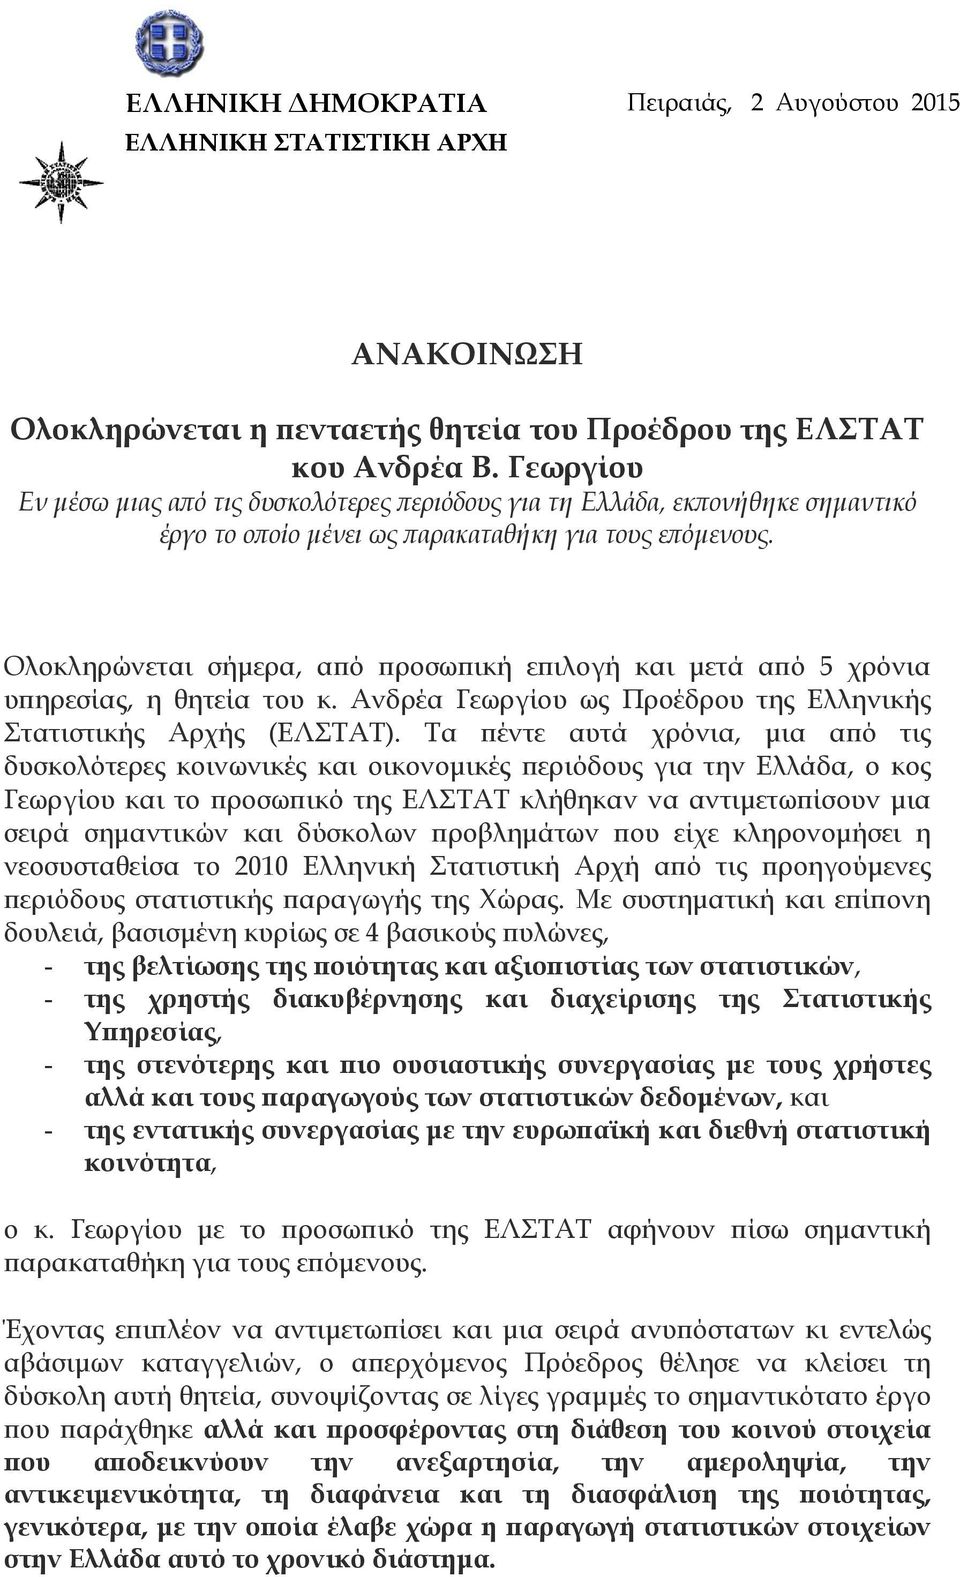 Ολοκληρώνεται σήμερα, από προσωπική επιλογή και μετά από 5 χρόνια υπηρεσίας, η θητεία του κ. Ανδρέα Γεωργίου ως Προέδρου της Ελληνικής Στατιστικής Αρχής (ΕΛΣΤΑΤ).